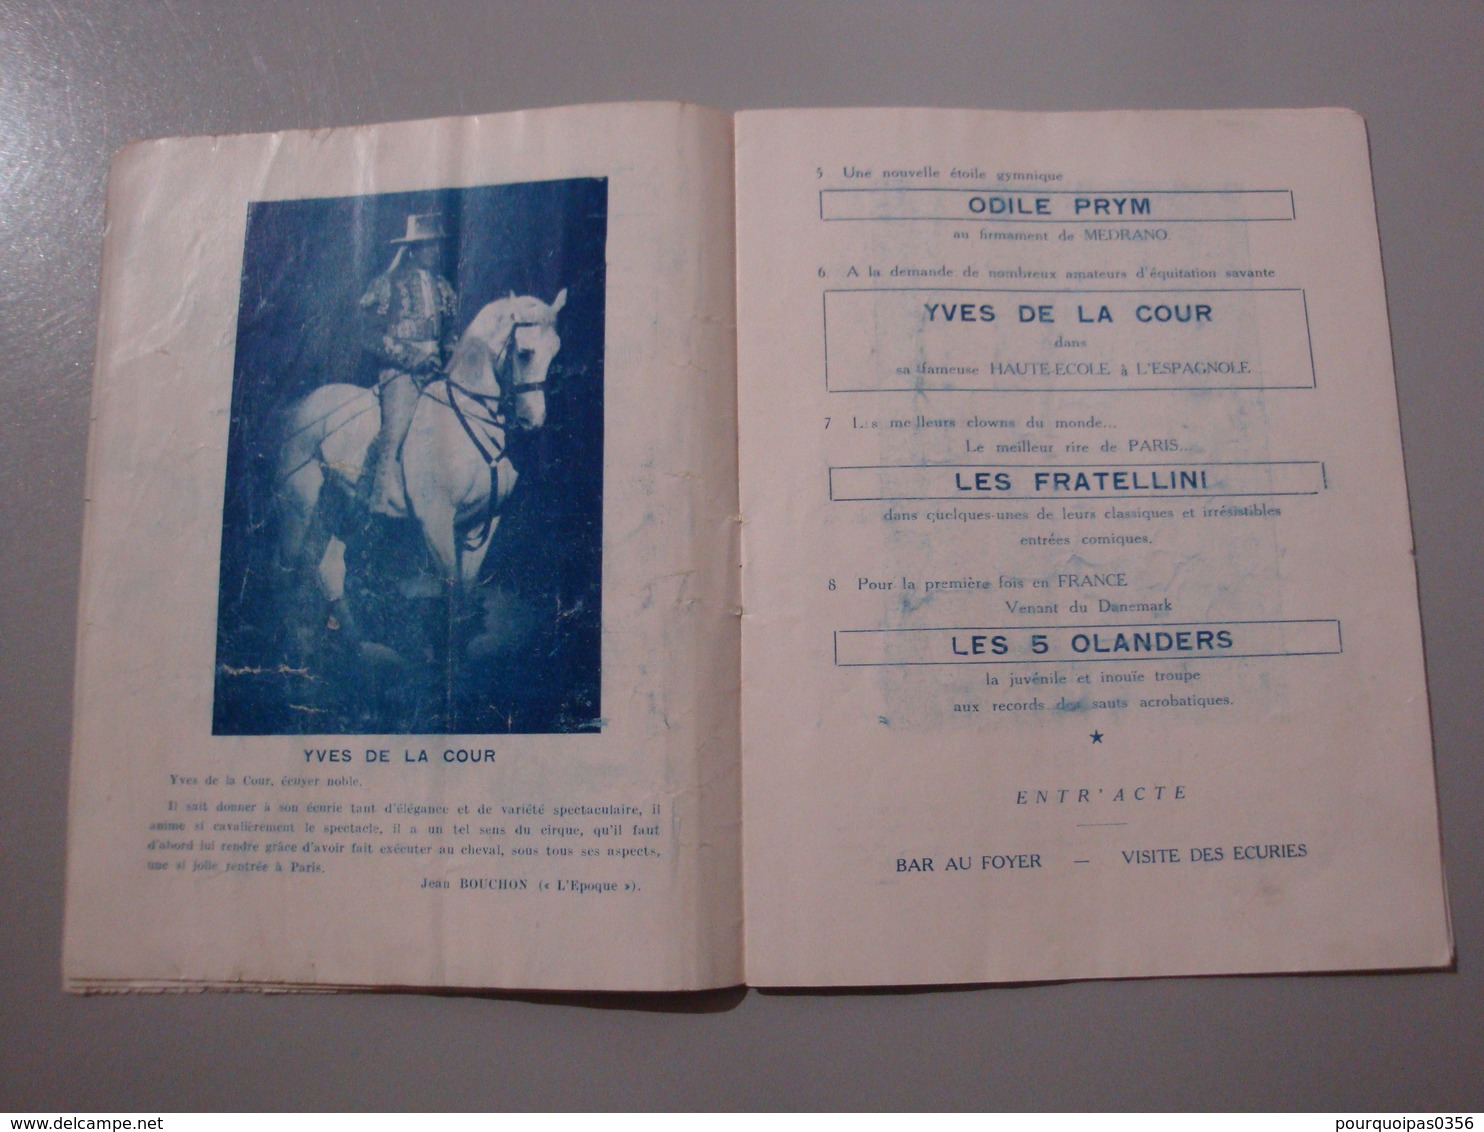 PROGRAMME CIRQUE DE PARIS MEDRANO 1948/1949 CLOWNS FRATELLINI - Programmes